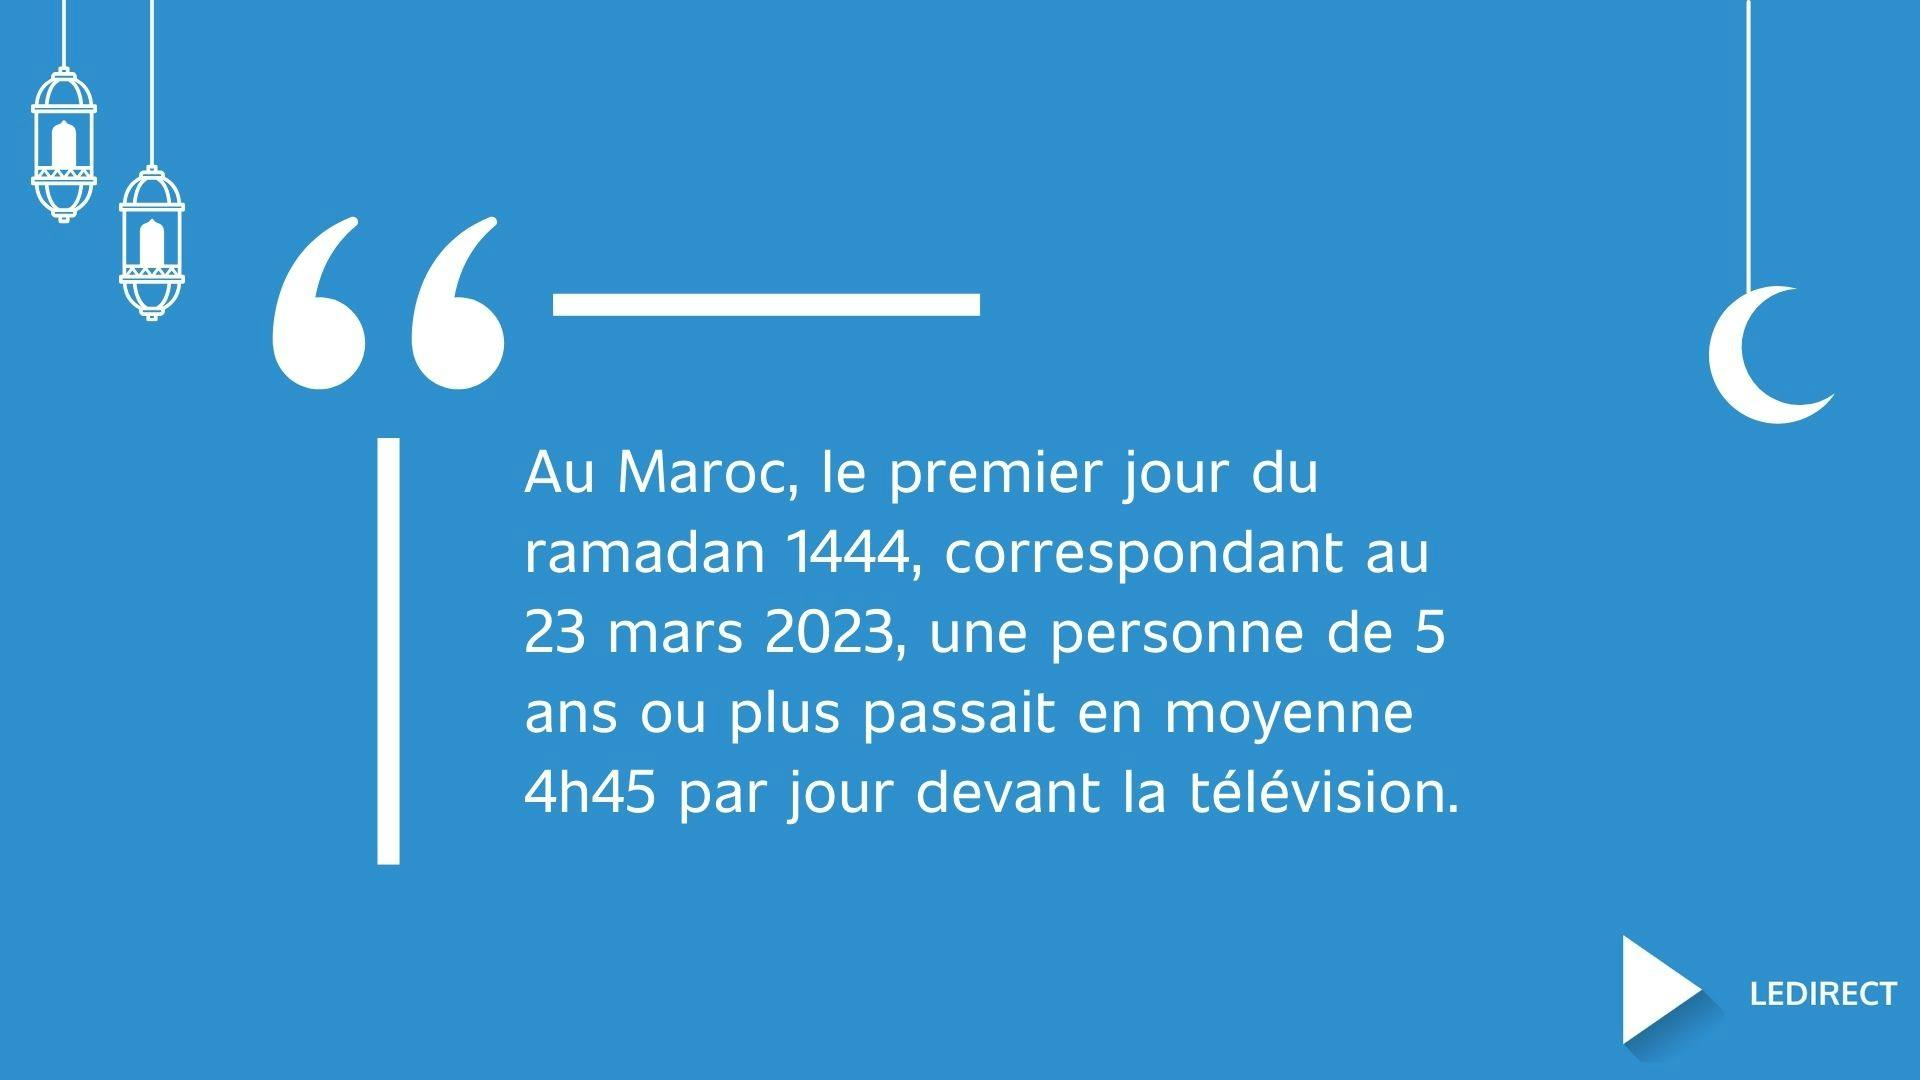 Illustration montrant une statistique sur la télévision au Maroc au ramadan 2023